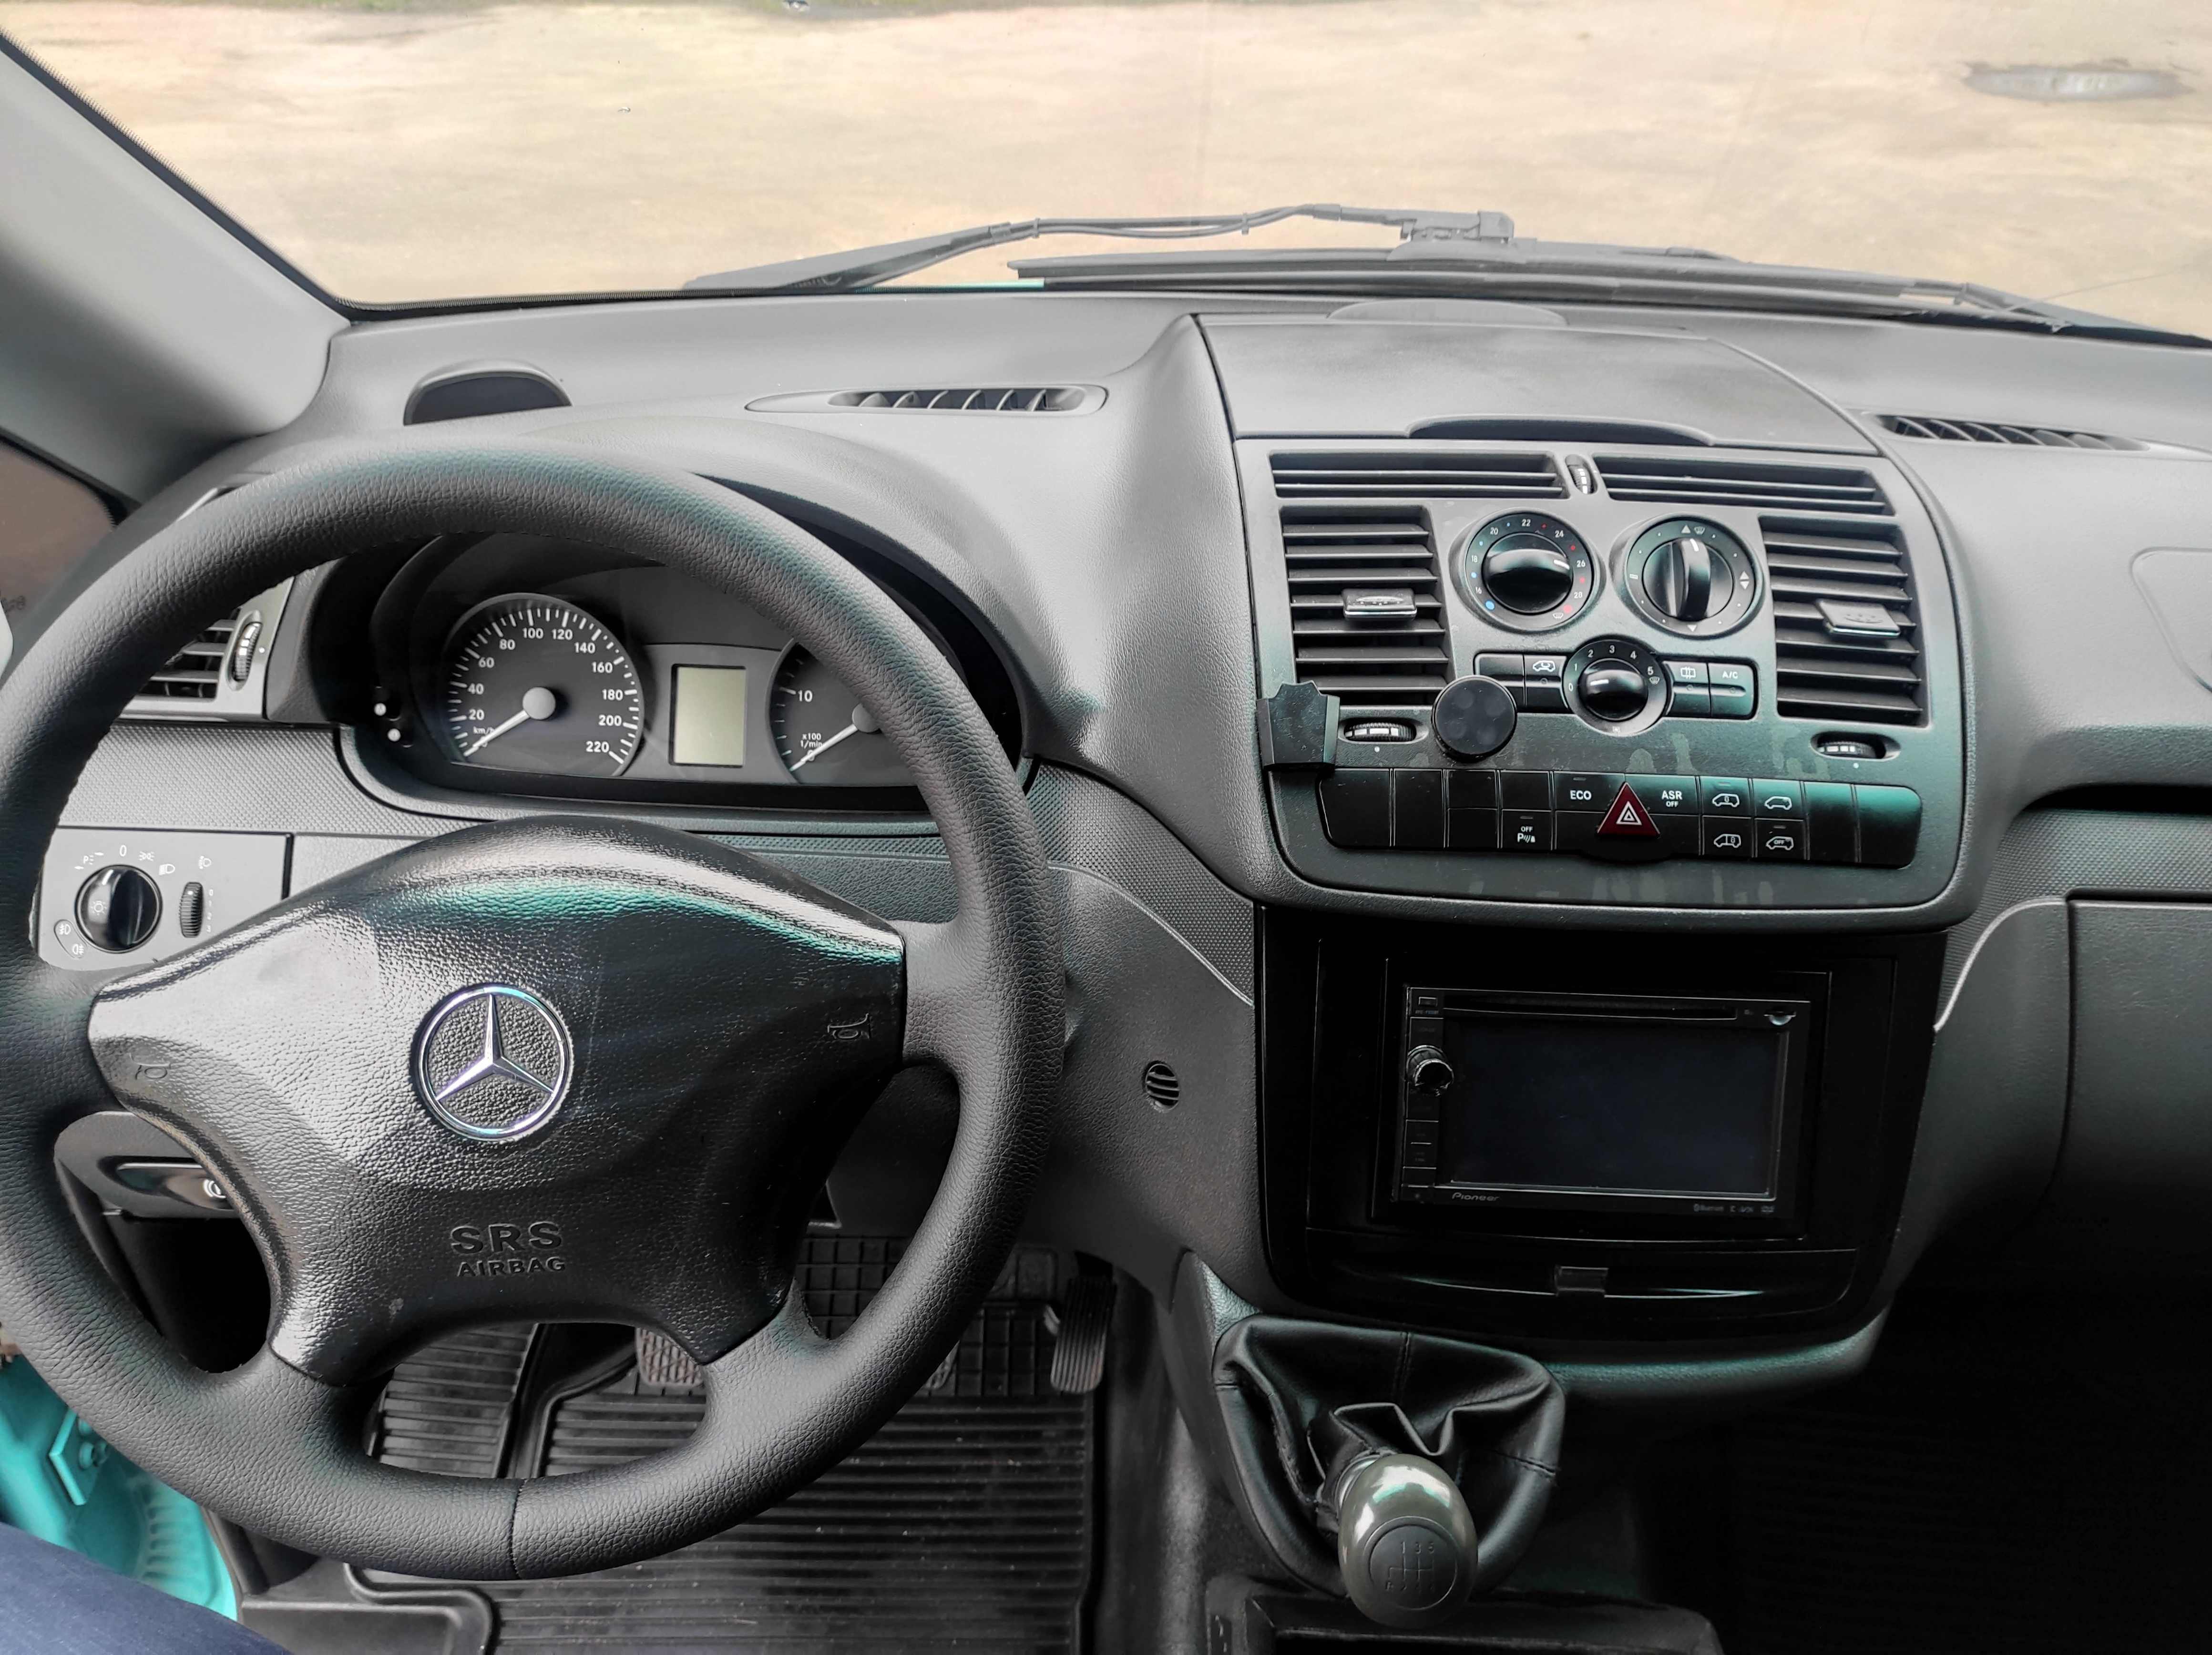 Mercedes-Benz Vito 2011 W639 (FL) • 113 CDI AT (136 к.с.)